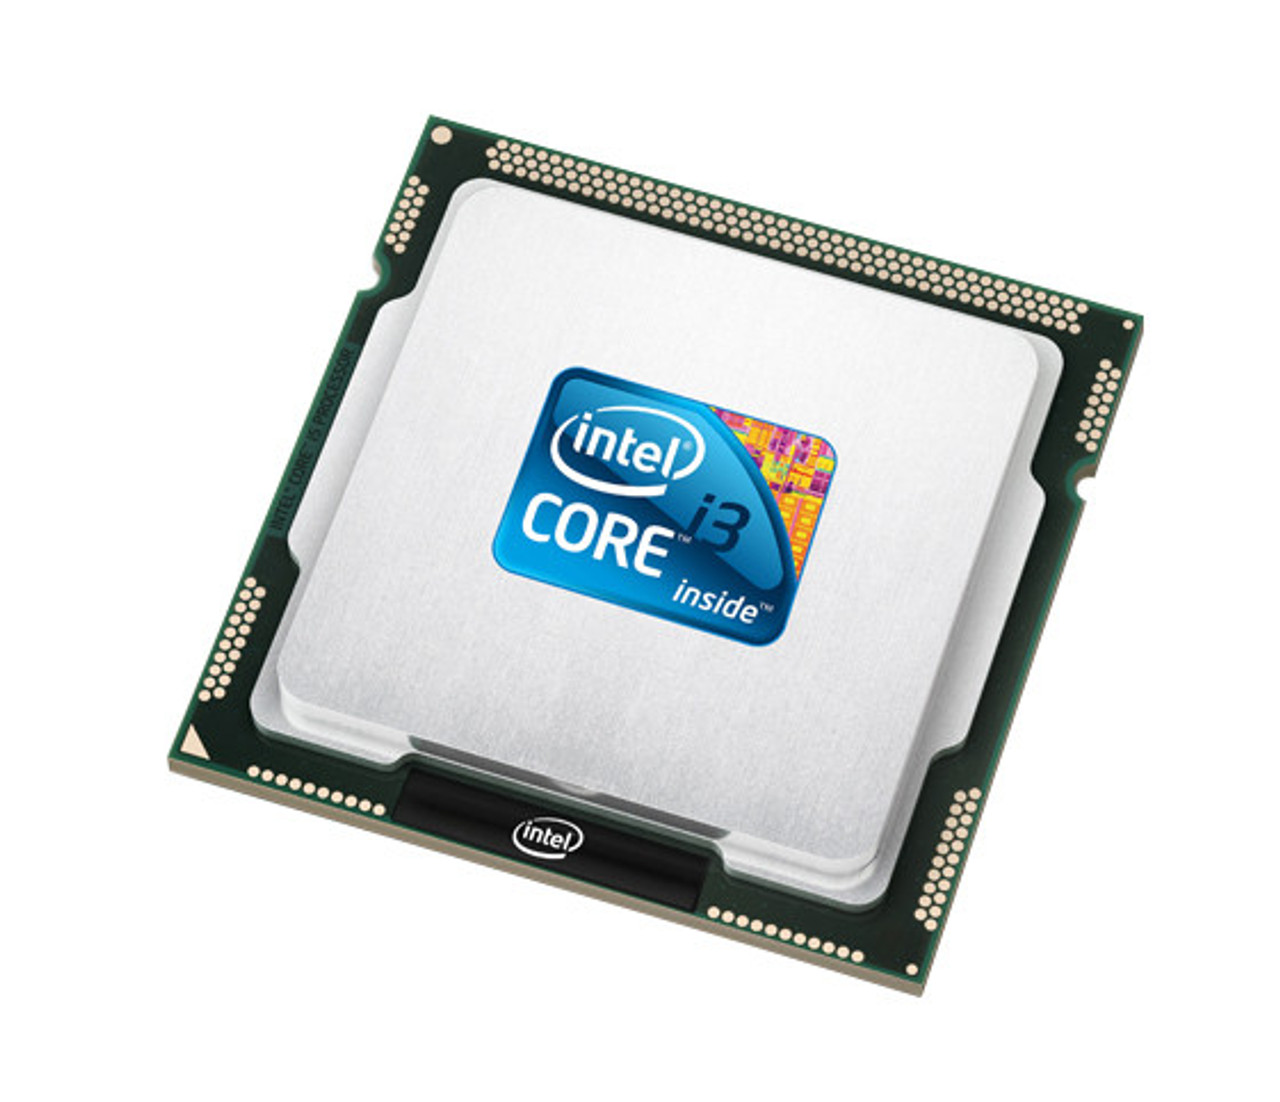 Intel Core i3-4160 3.60GHz Processor